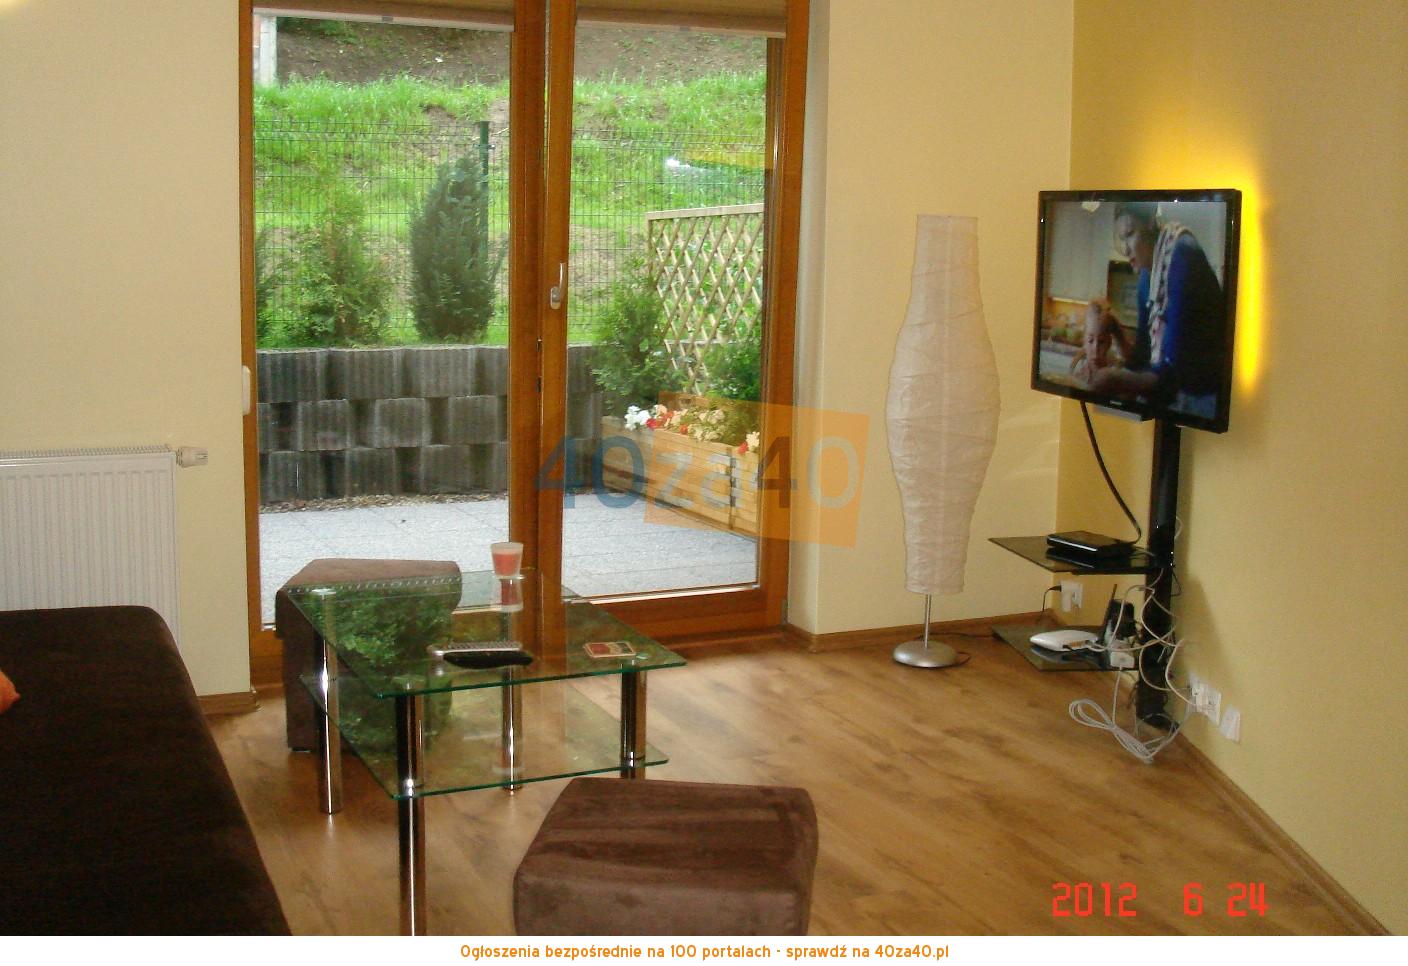 Mieszkanie do wynajęcia, pokoje: 2, cena: 150,00 PLN, Gdańsk, kontakt: 601616007